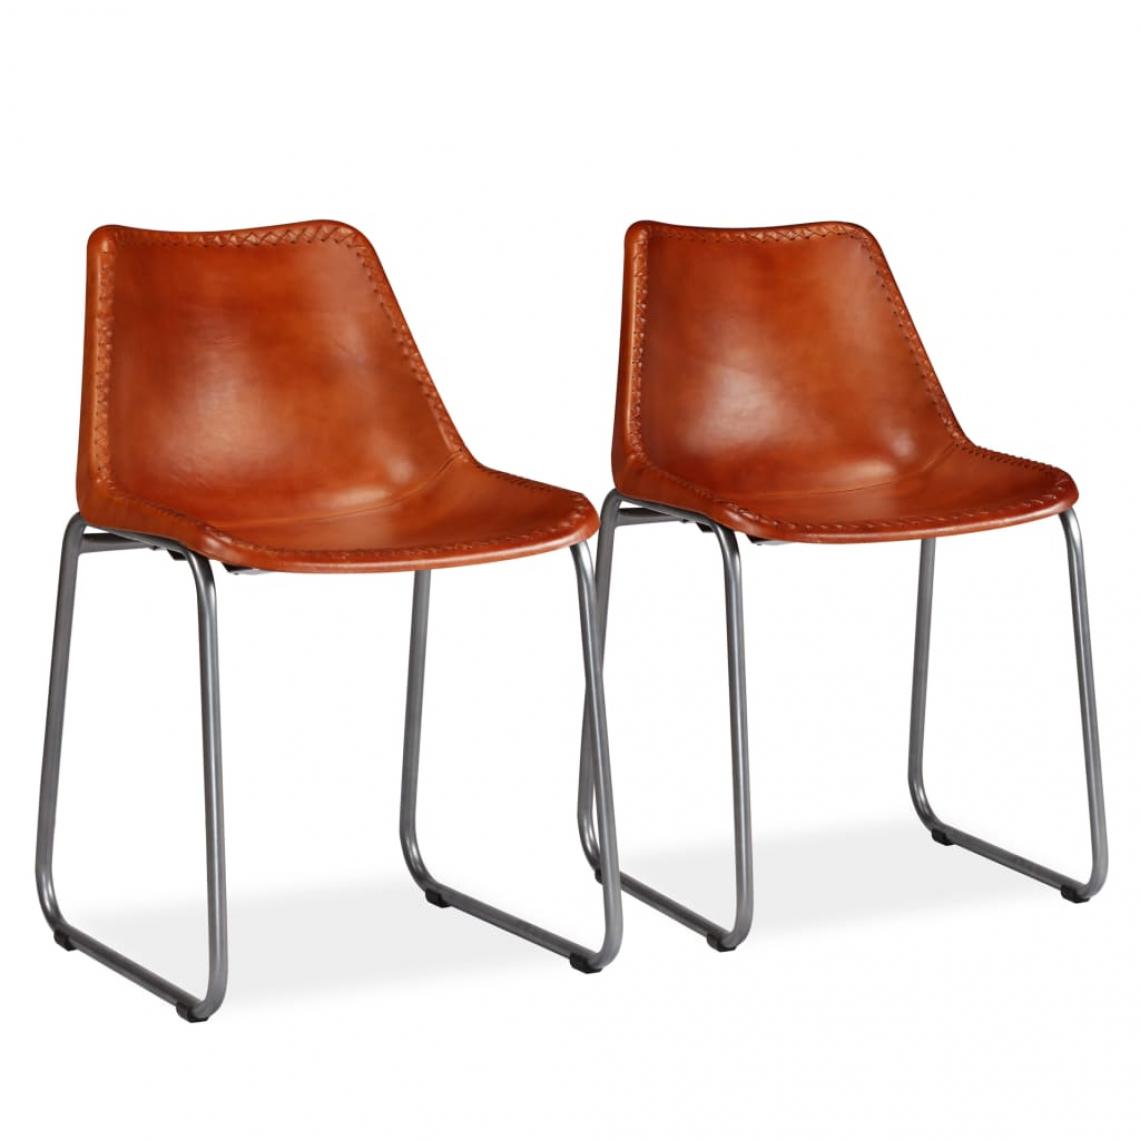 Decoshop26 - Lot de 2 chaises de salle à manger cuisine design vintage cuir véritable marron CDS020682 - Chaises